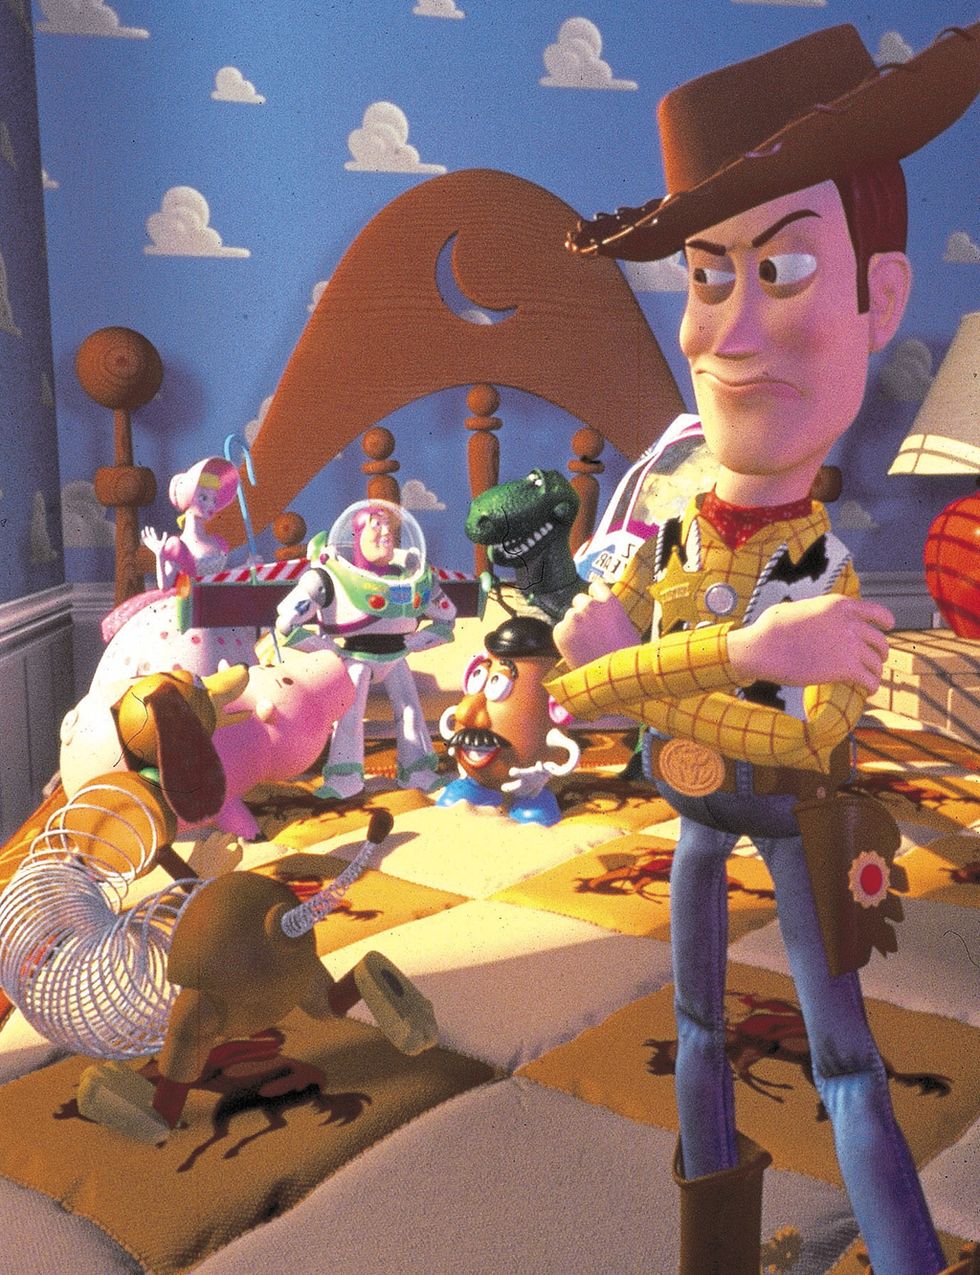 <p>'Toy Story' (1995) es el primer largometraje animado rodado totalmente con ordenador. En 1993, Disney casi cancela su producción porque consideraban a Woody un 'patán sarcástico', así que John Lasseter hizo que su equipo (entre ellos, Joss Whedon, creador de 'Buffy el Vampiro' y director de 'Los Vengadores') reescribiera el guión en menos de una semana. Lasseter aportó su cara para el rostro de Buzz Lightyear, mientras que Tom Hanks decidió poner la voz a Woody porque siempre se había preguntado 'qué harían sus juguetes cuando no los miraba'. Entre los títulos descartados para la peli: 'The New Toy', 'The Cowboy &amp; The Spaceman', 'The Favorite' y 'Toyz in the Hood'.</p>